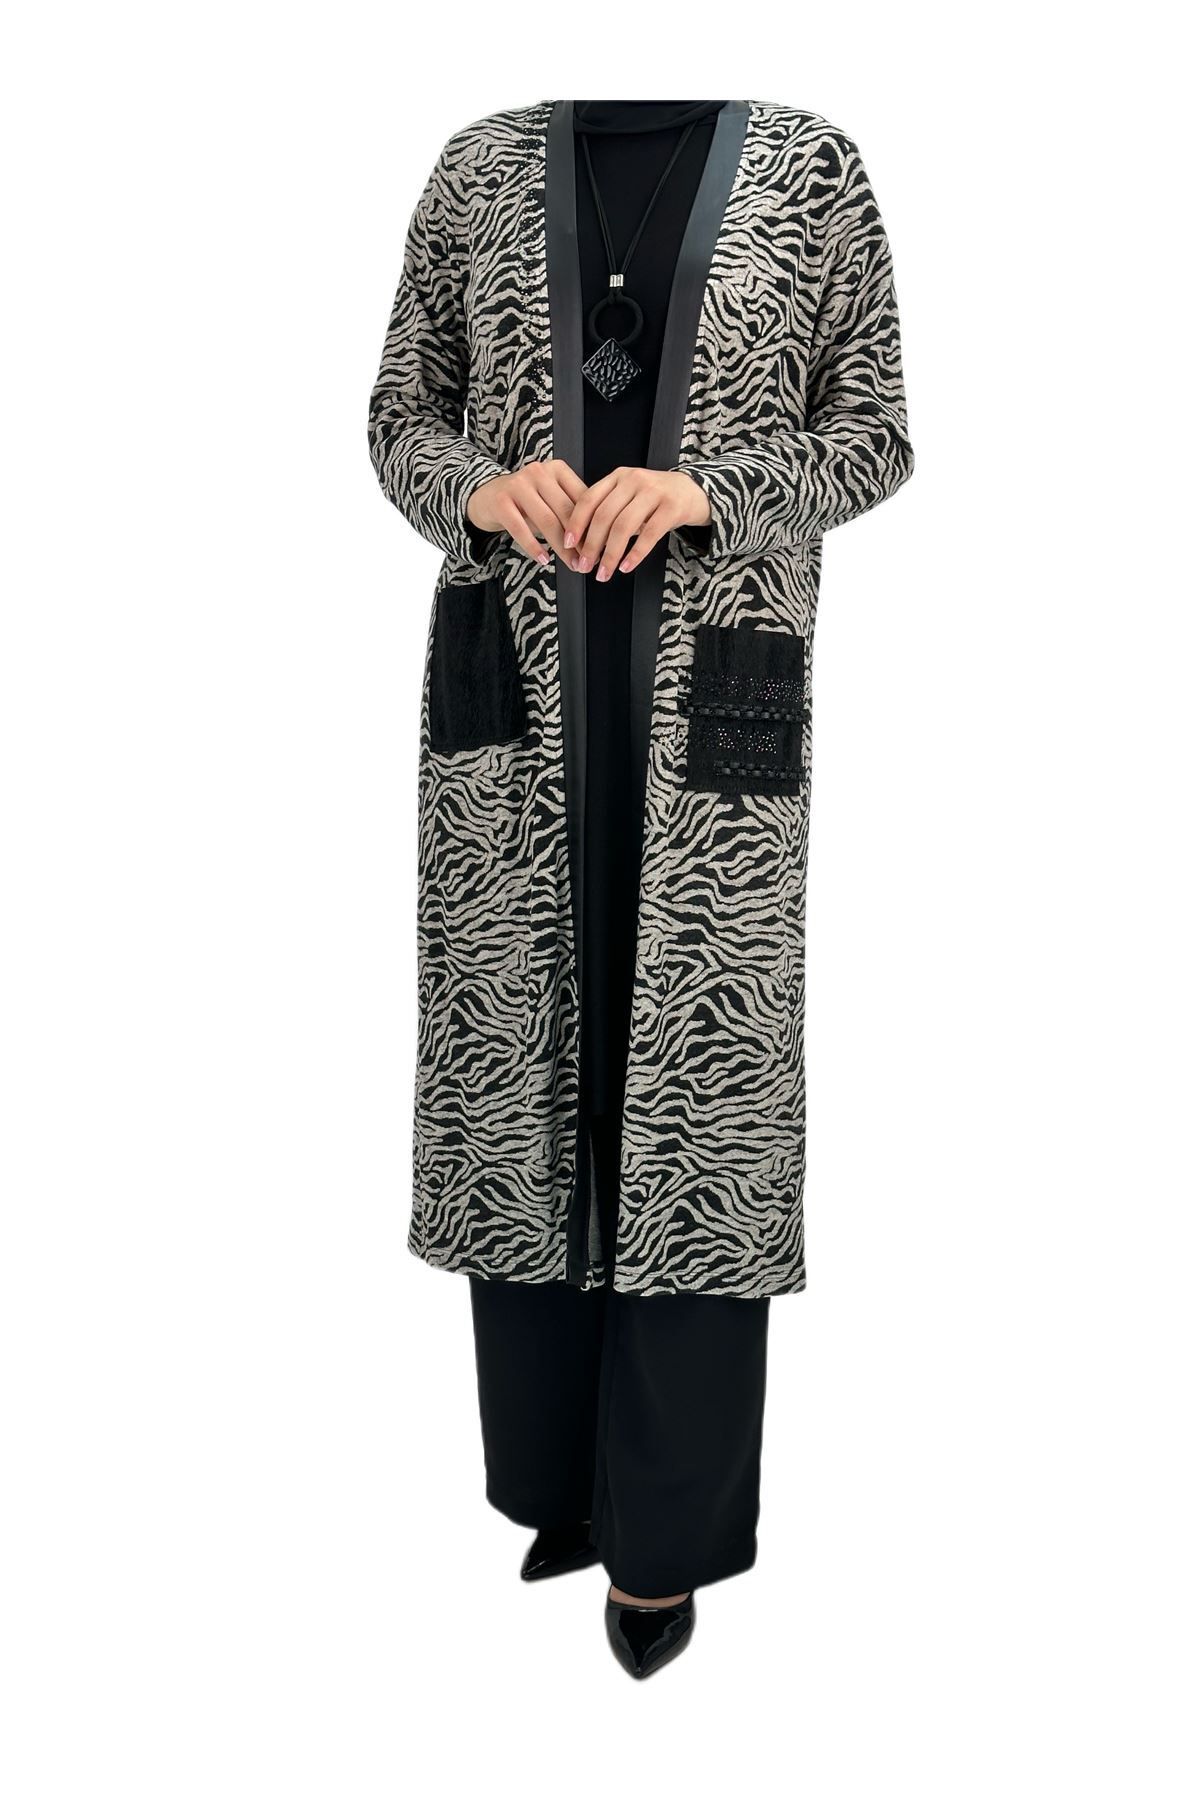 ottoman wear Otw47196 Ceket-içlik Takım Siyah